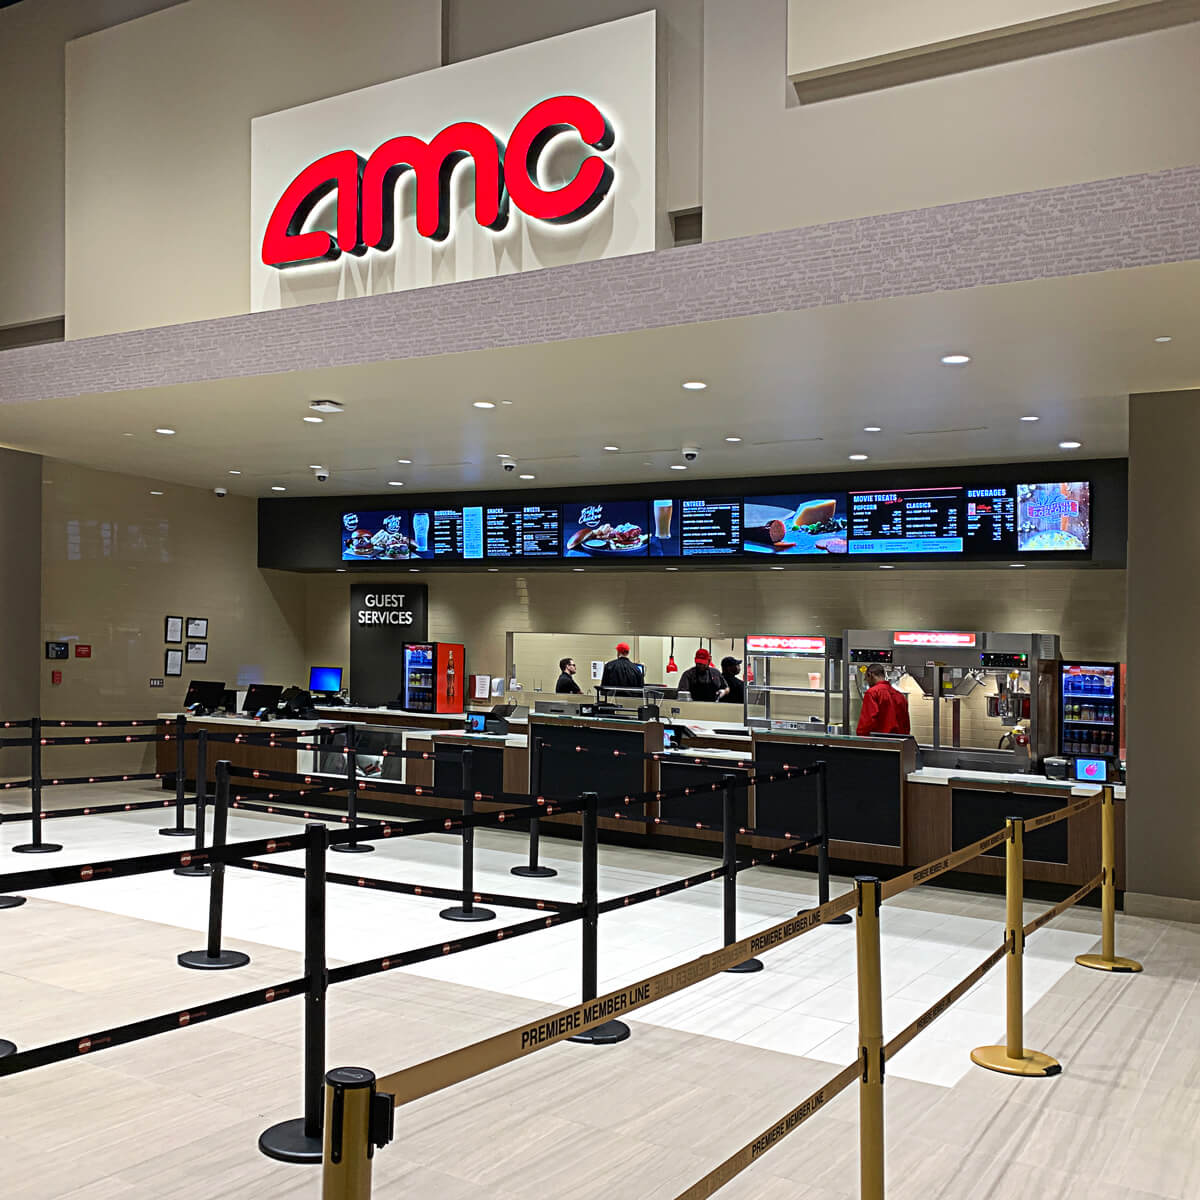 AMC Dine-In Theatres